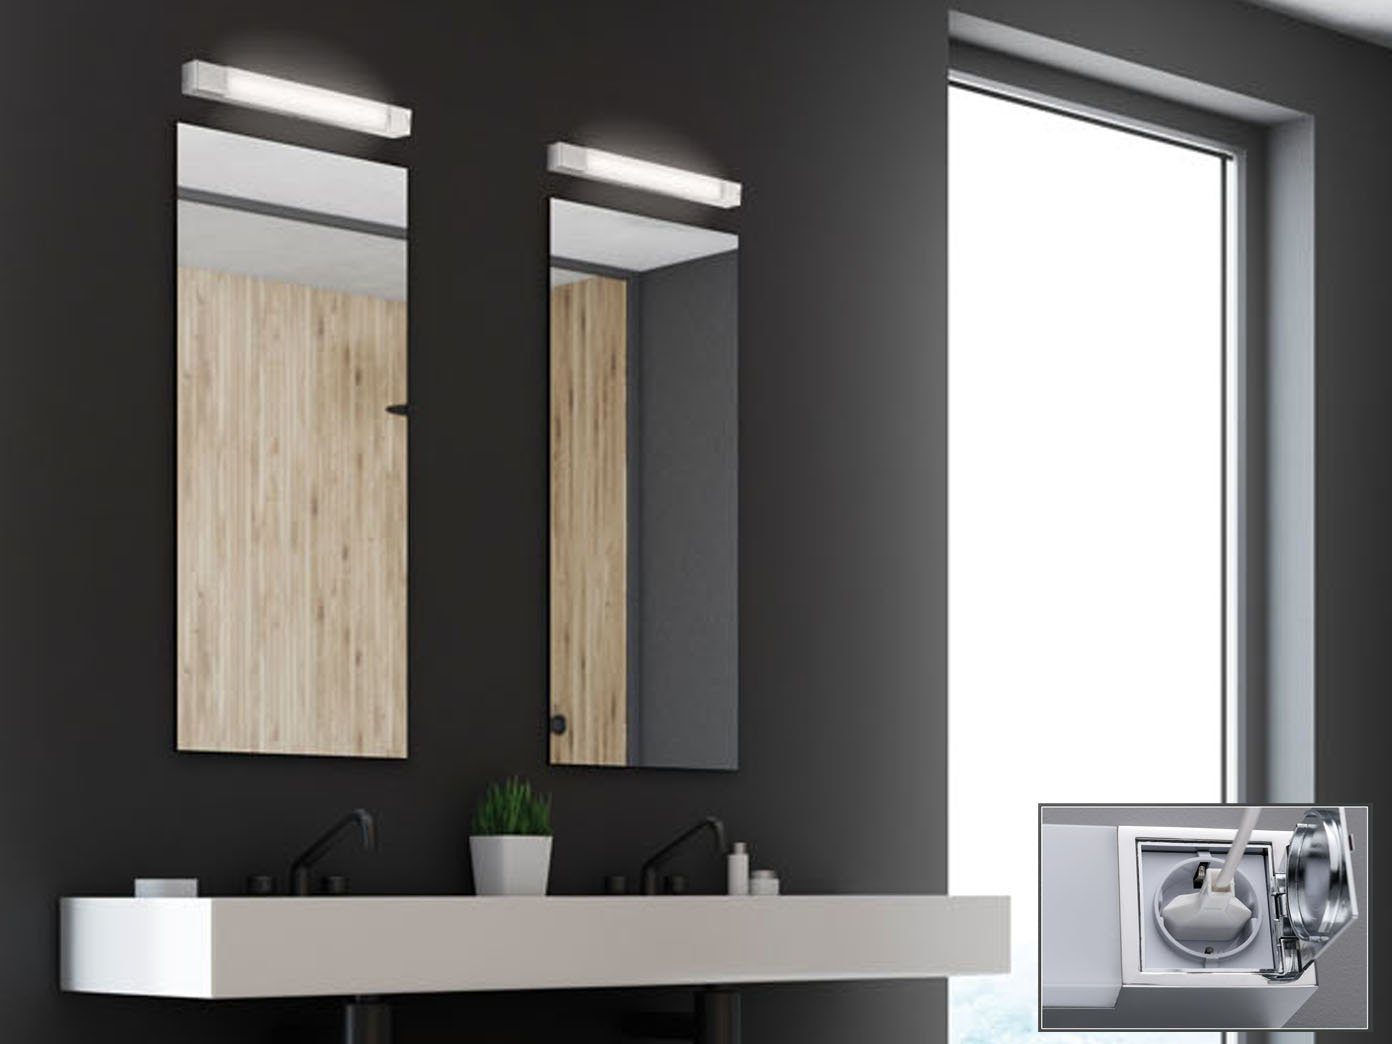 FISCHER & HONSEL Spiegelleuchte, Steckdose, Bad-Lampen Wand fest SET Badezimmerlampen IP 44, für Warmweiß, 60cm, 2er LED integriert, Badezimmer-Spiegel mit